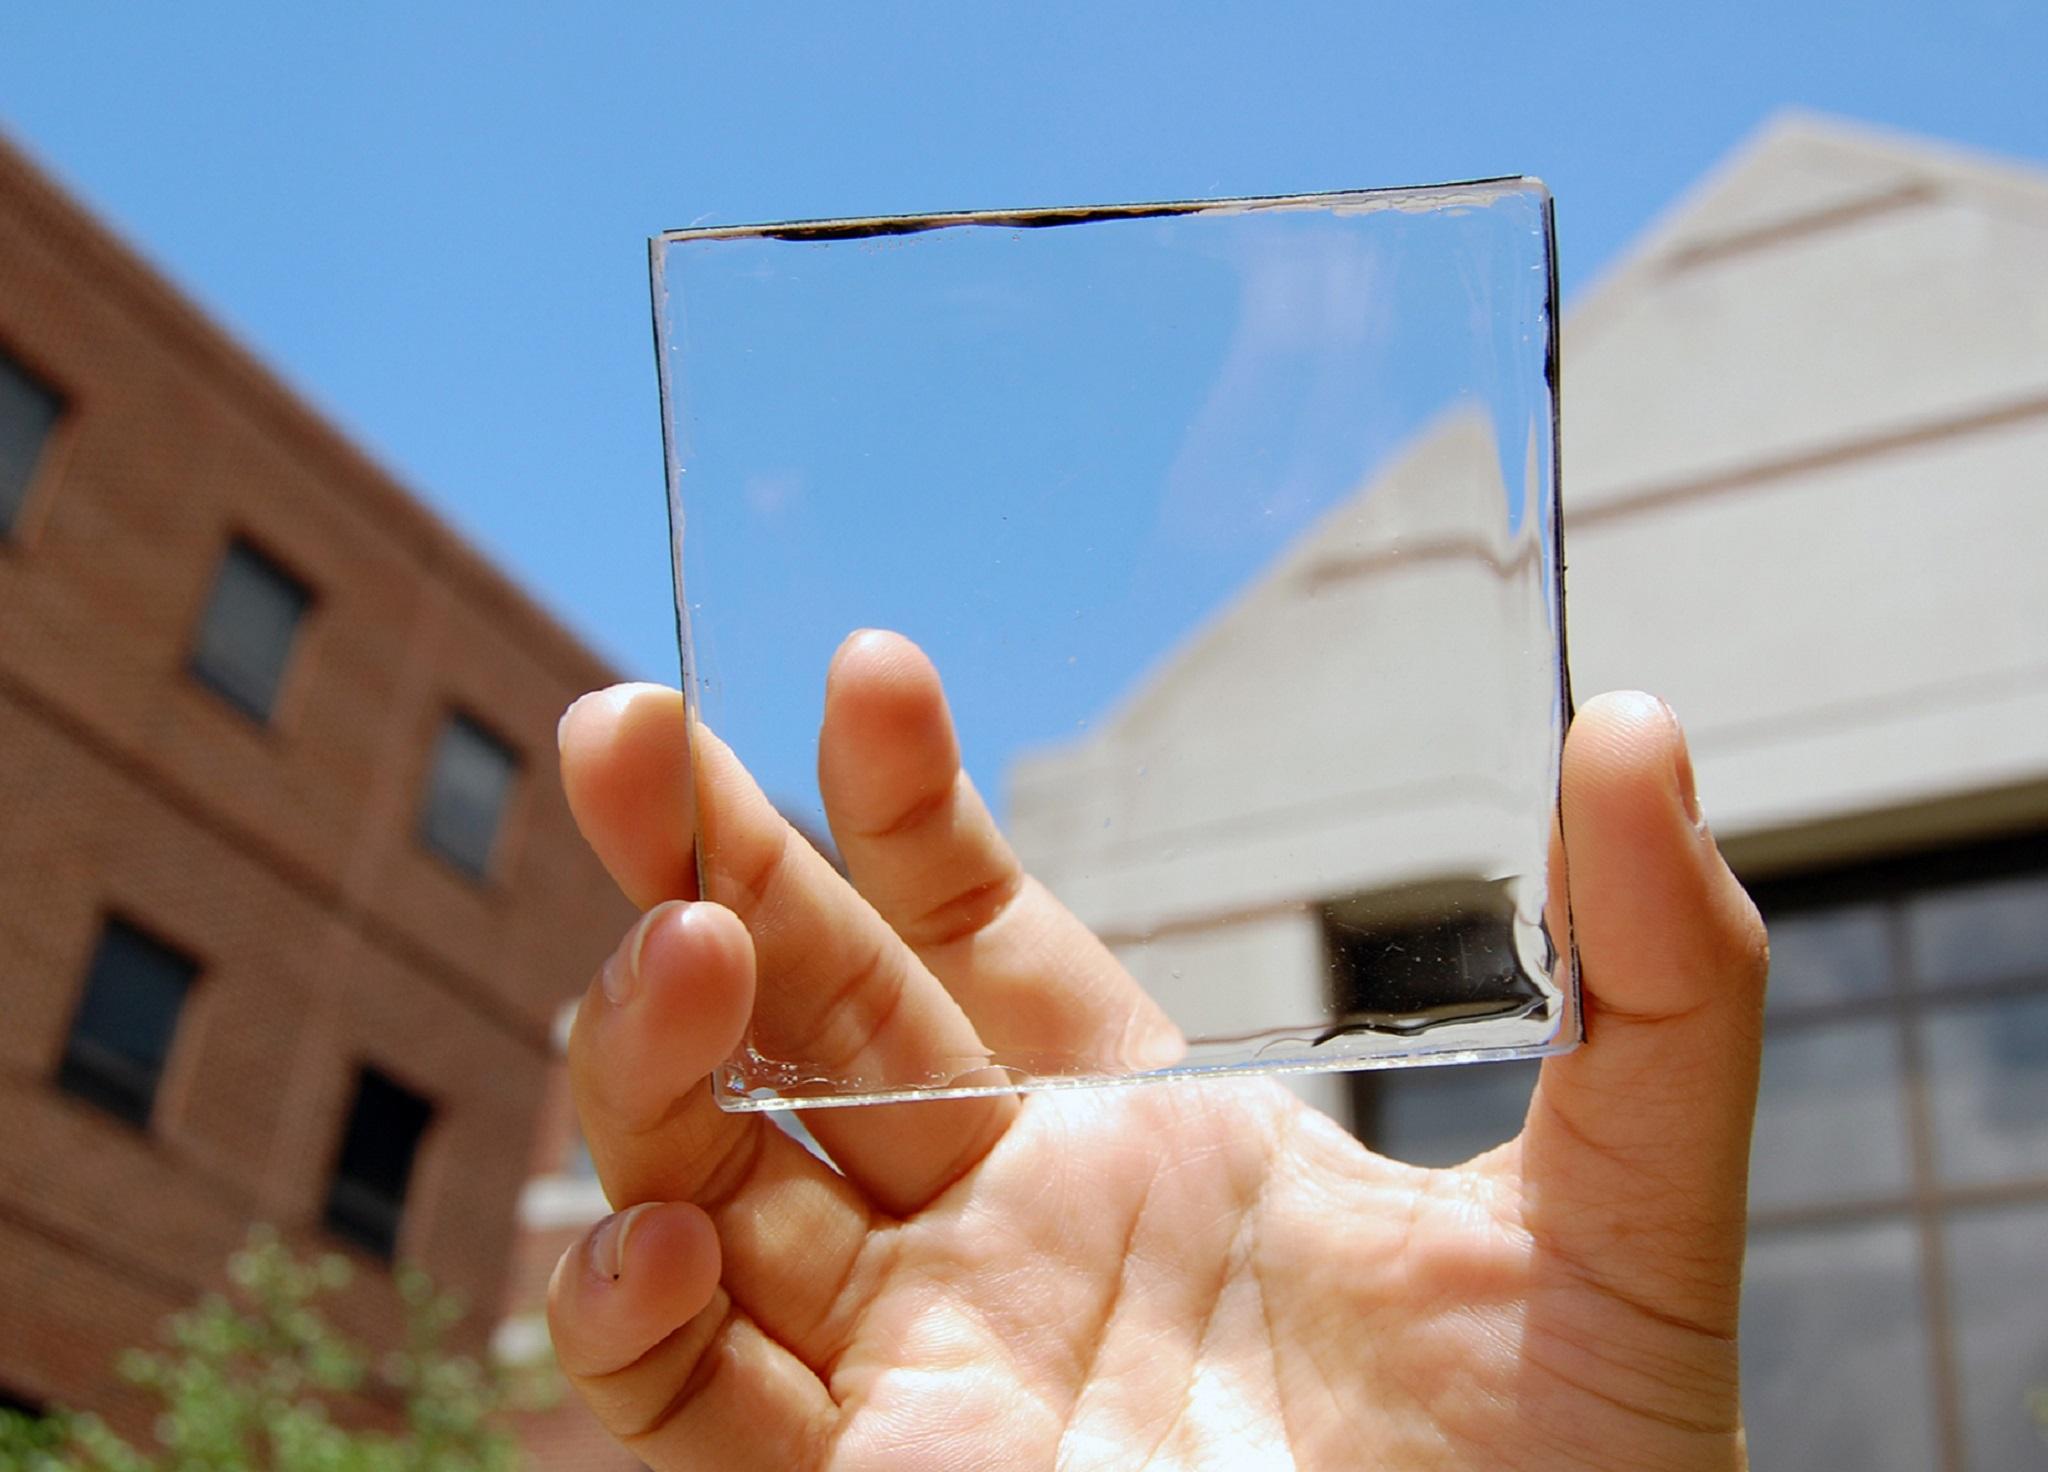 Los paneles transparentes pueden utilizarse como ventanas que generan electricidad